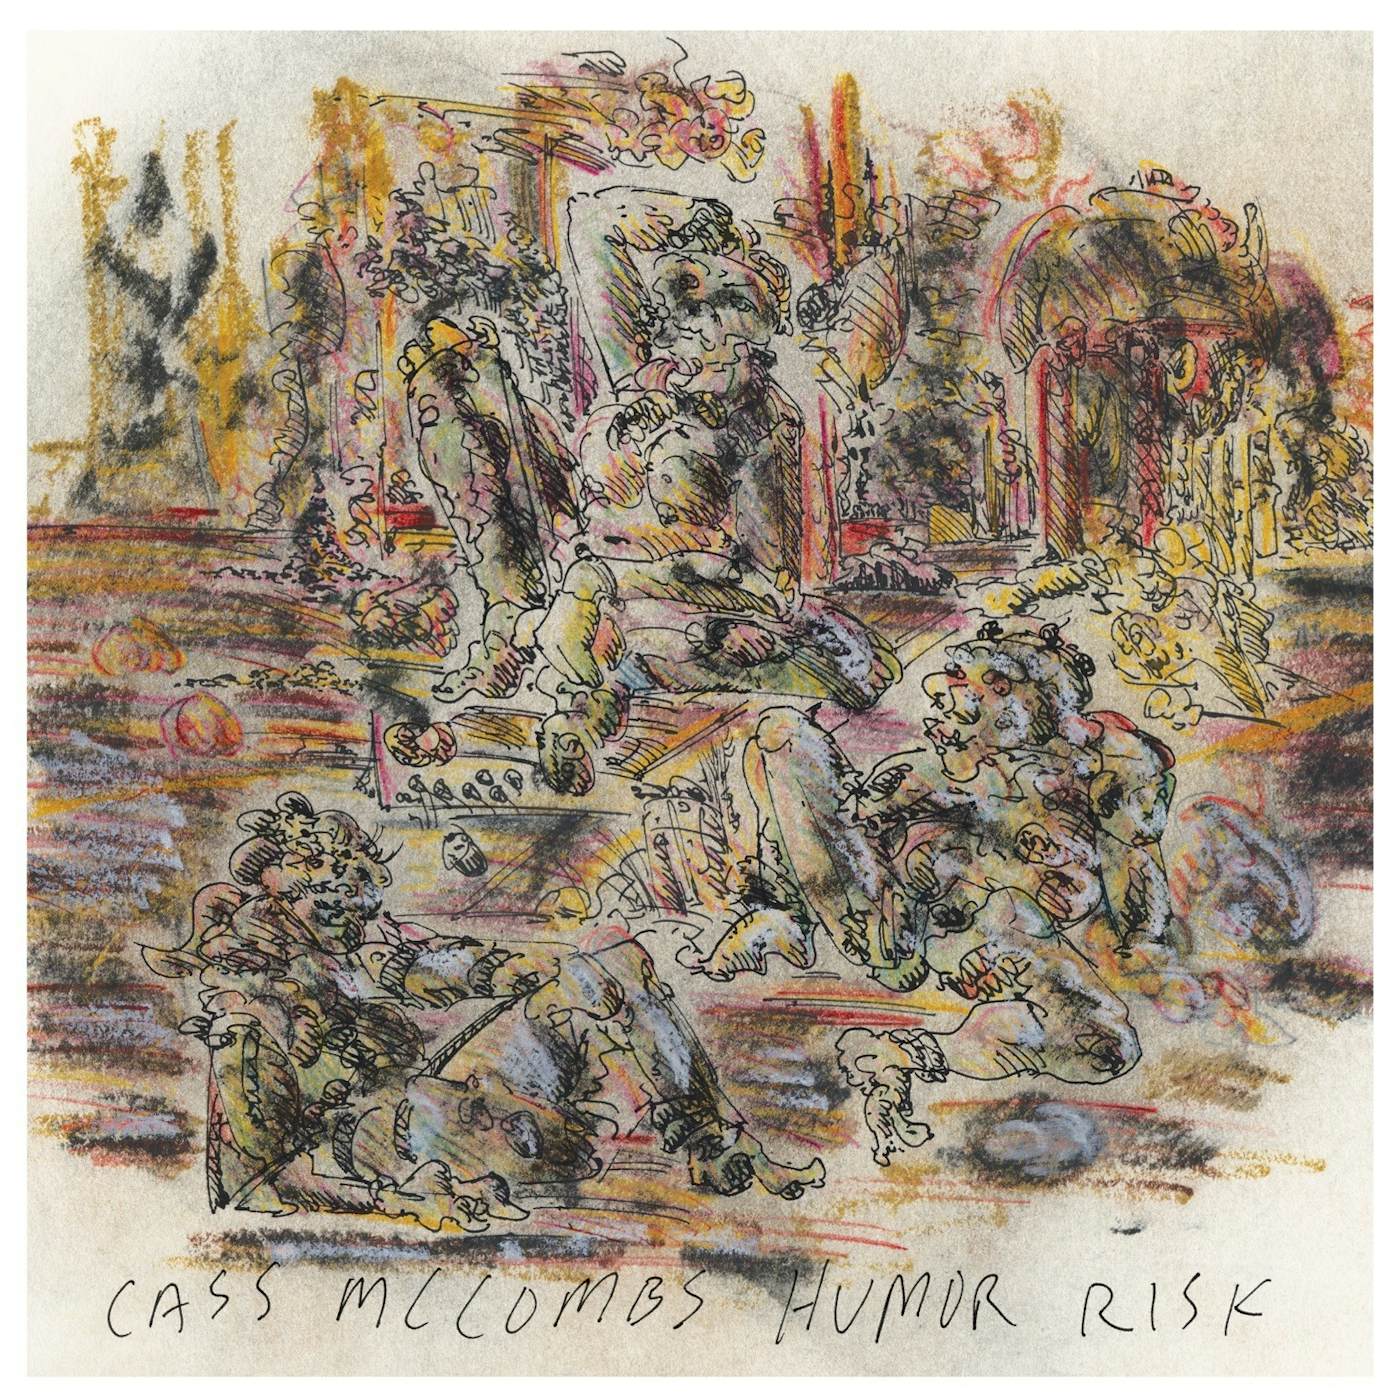 Cass McCombs HUMOR RISK CD